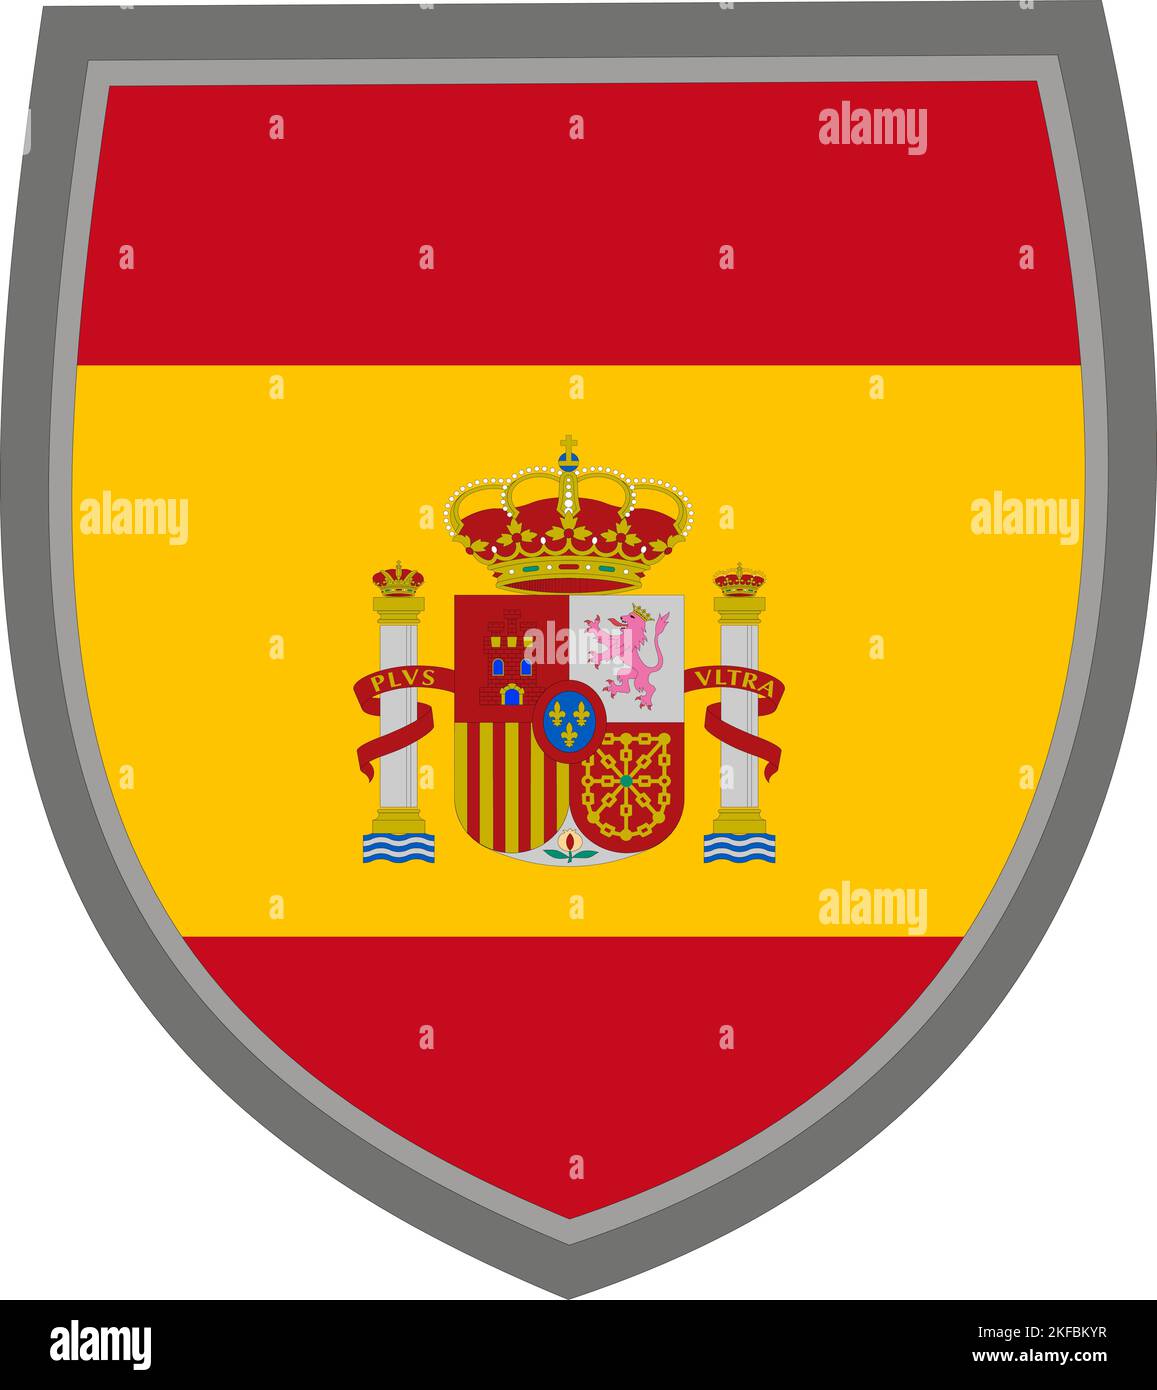 Schild mit der farbigen Flagge des Königreichs Spanien, spanische Flagge ausgeschnitten Stock Vektor